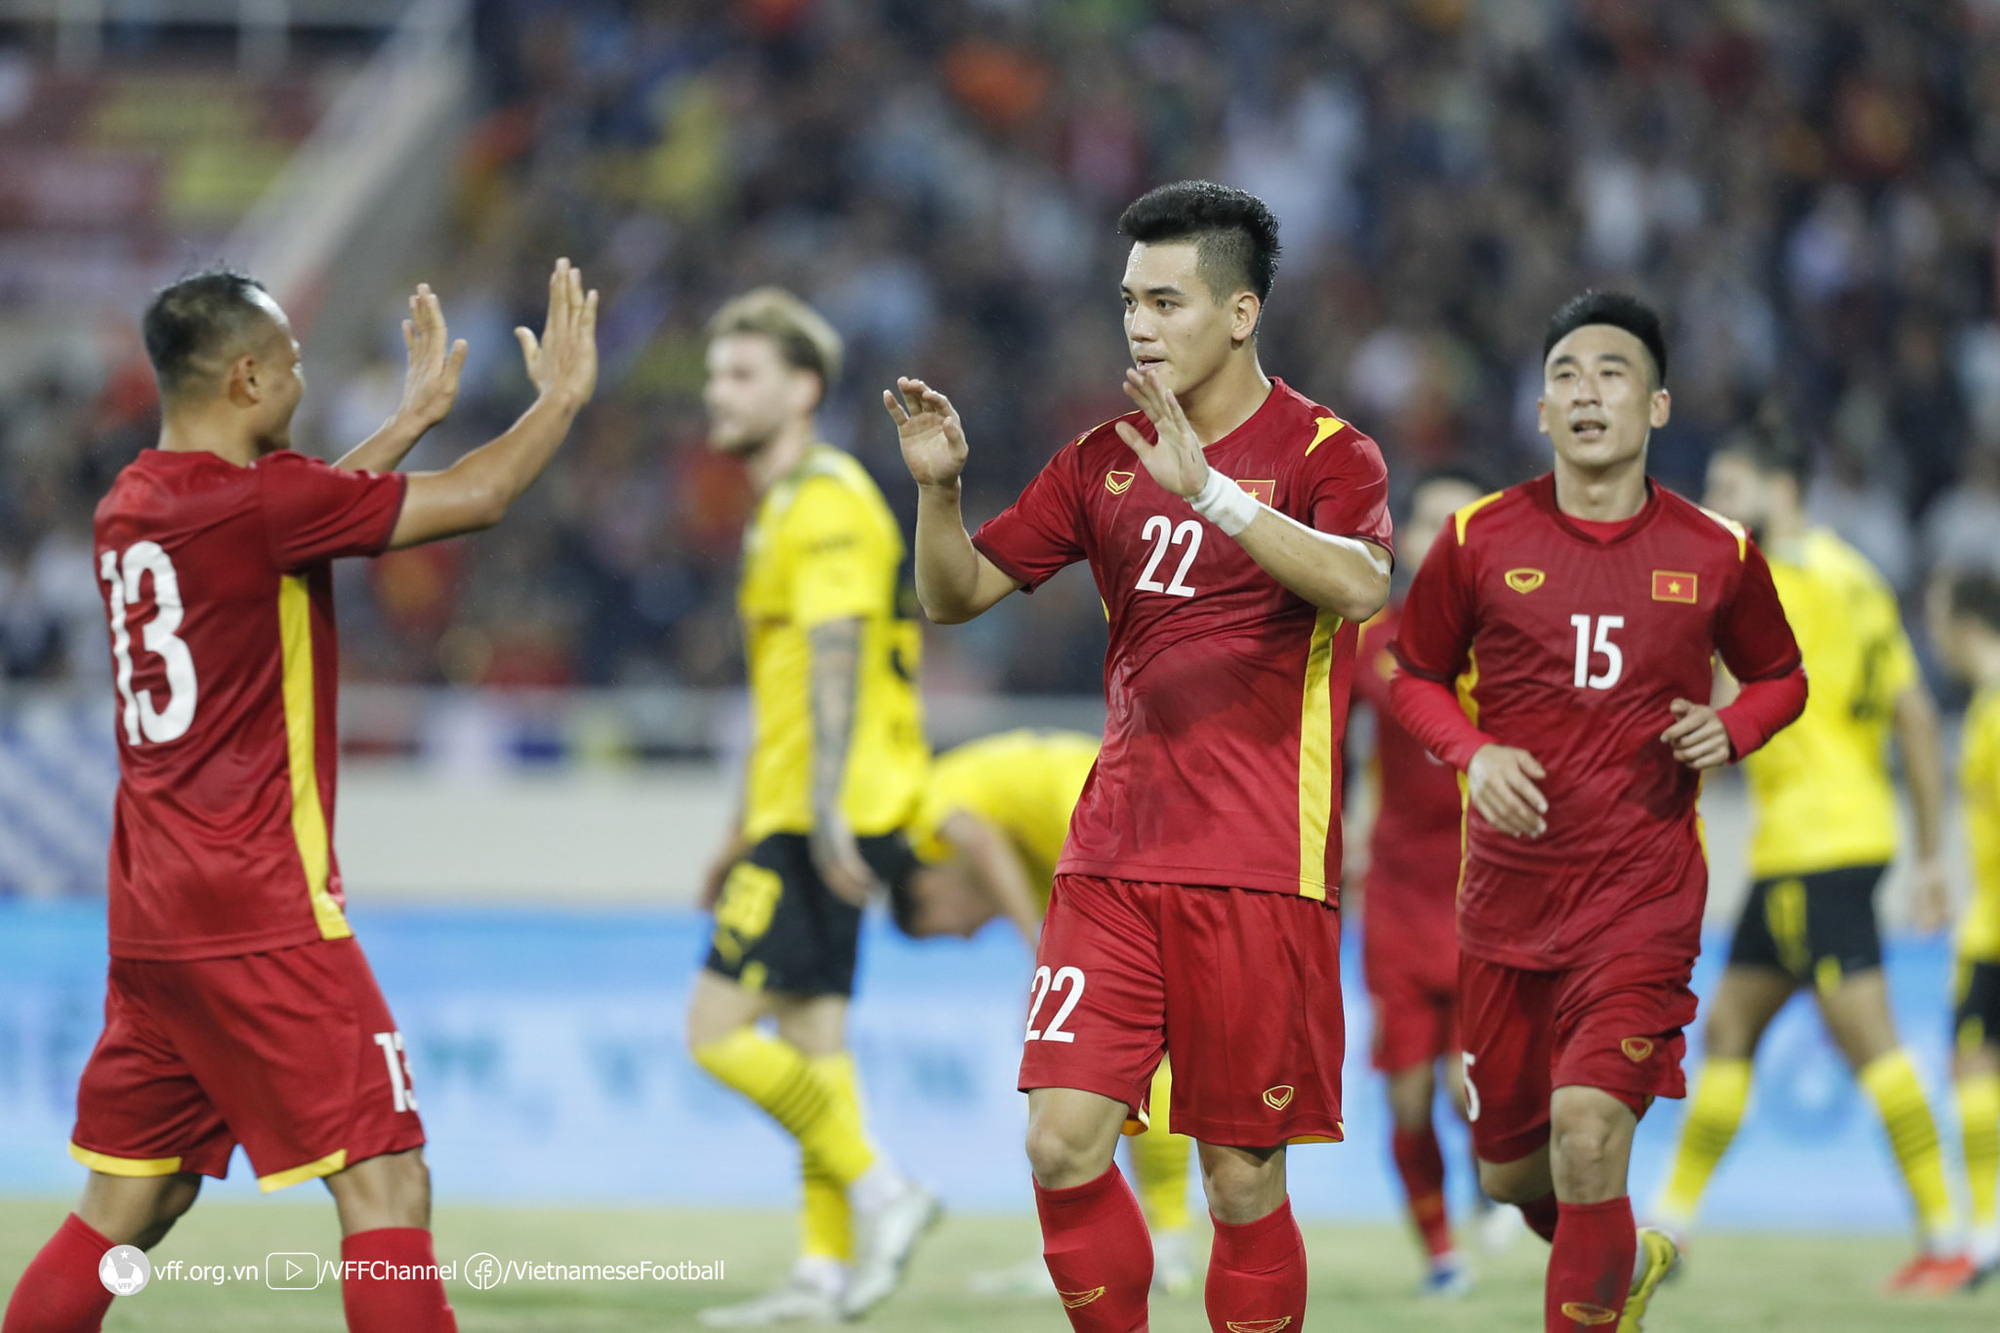 Giao hữu quốc tế, ĐT Việt Nam 2-1 CLB Borussia Dortmund: Cống hiến hết mình!